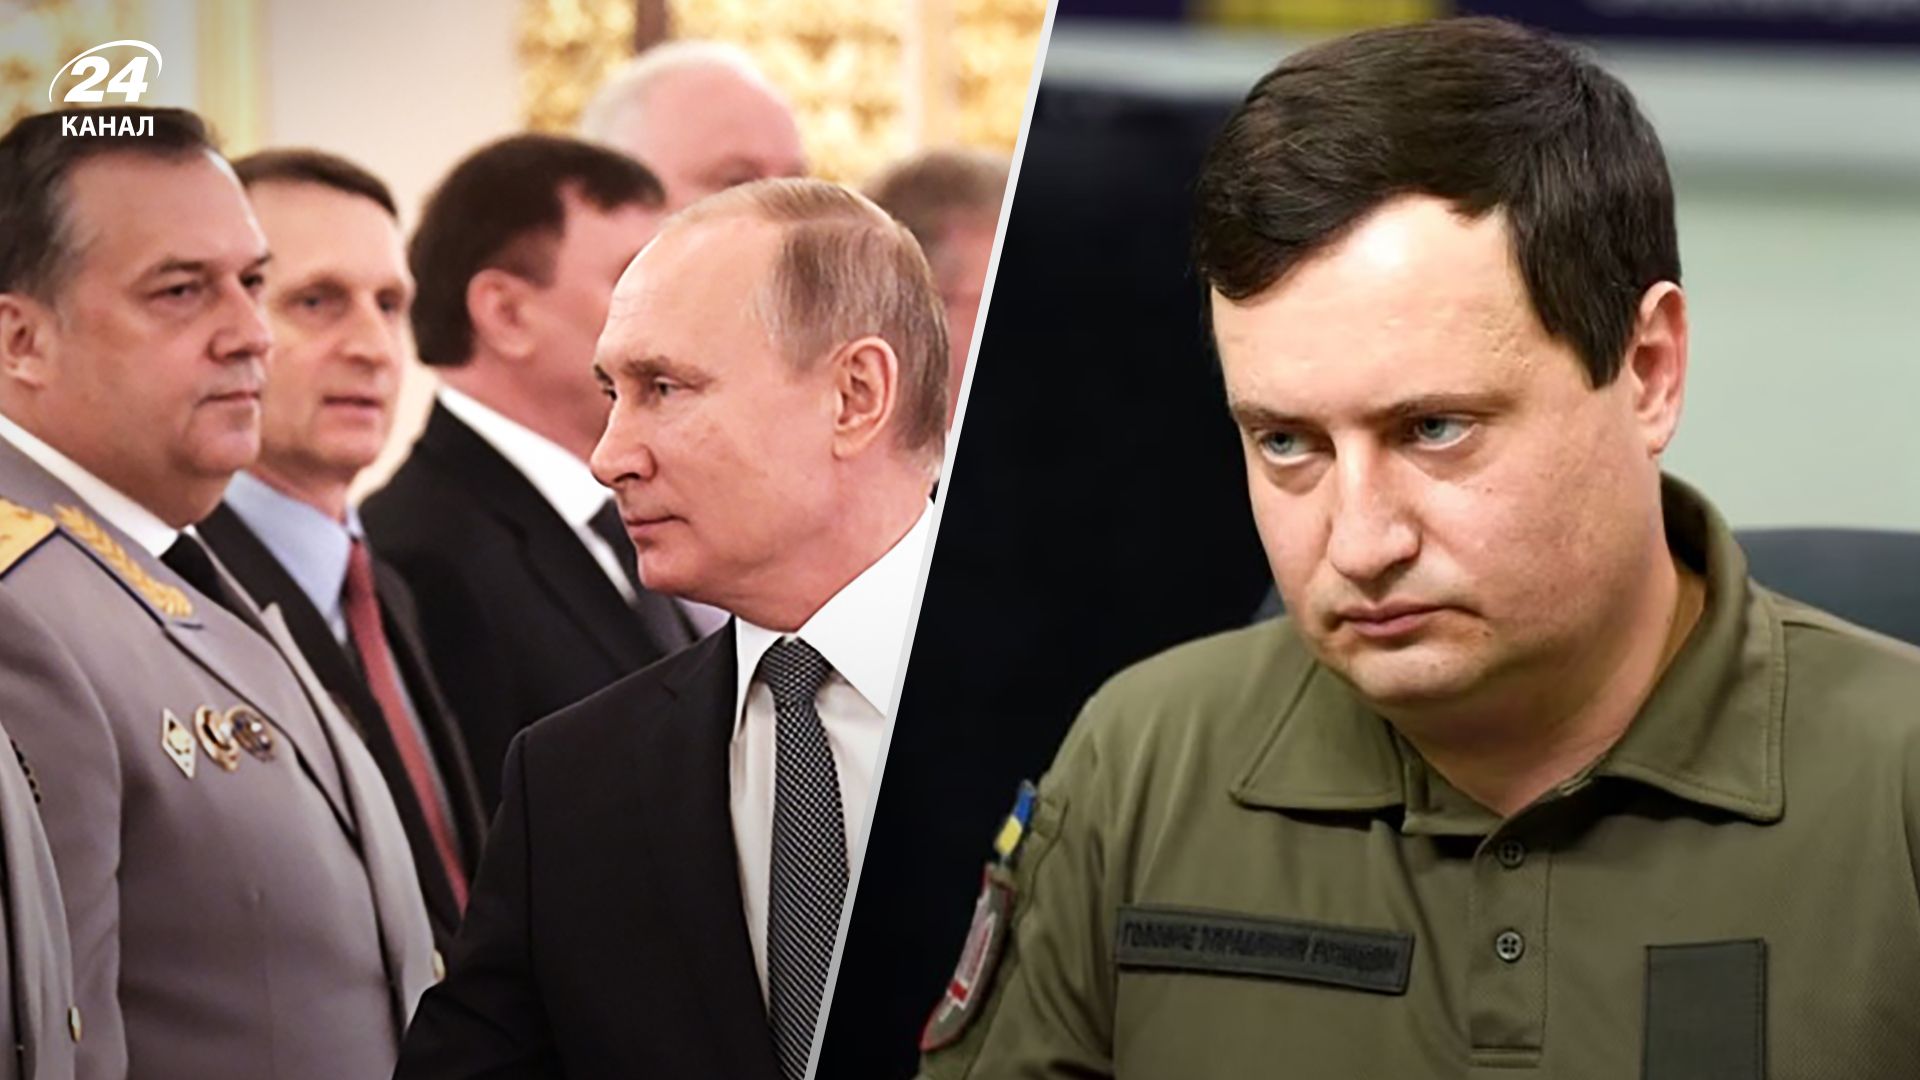 Российские элиты хотят гарантий безопасности для себя – детали от Андрея Юсова